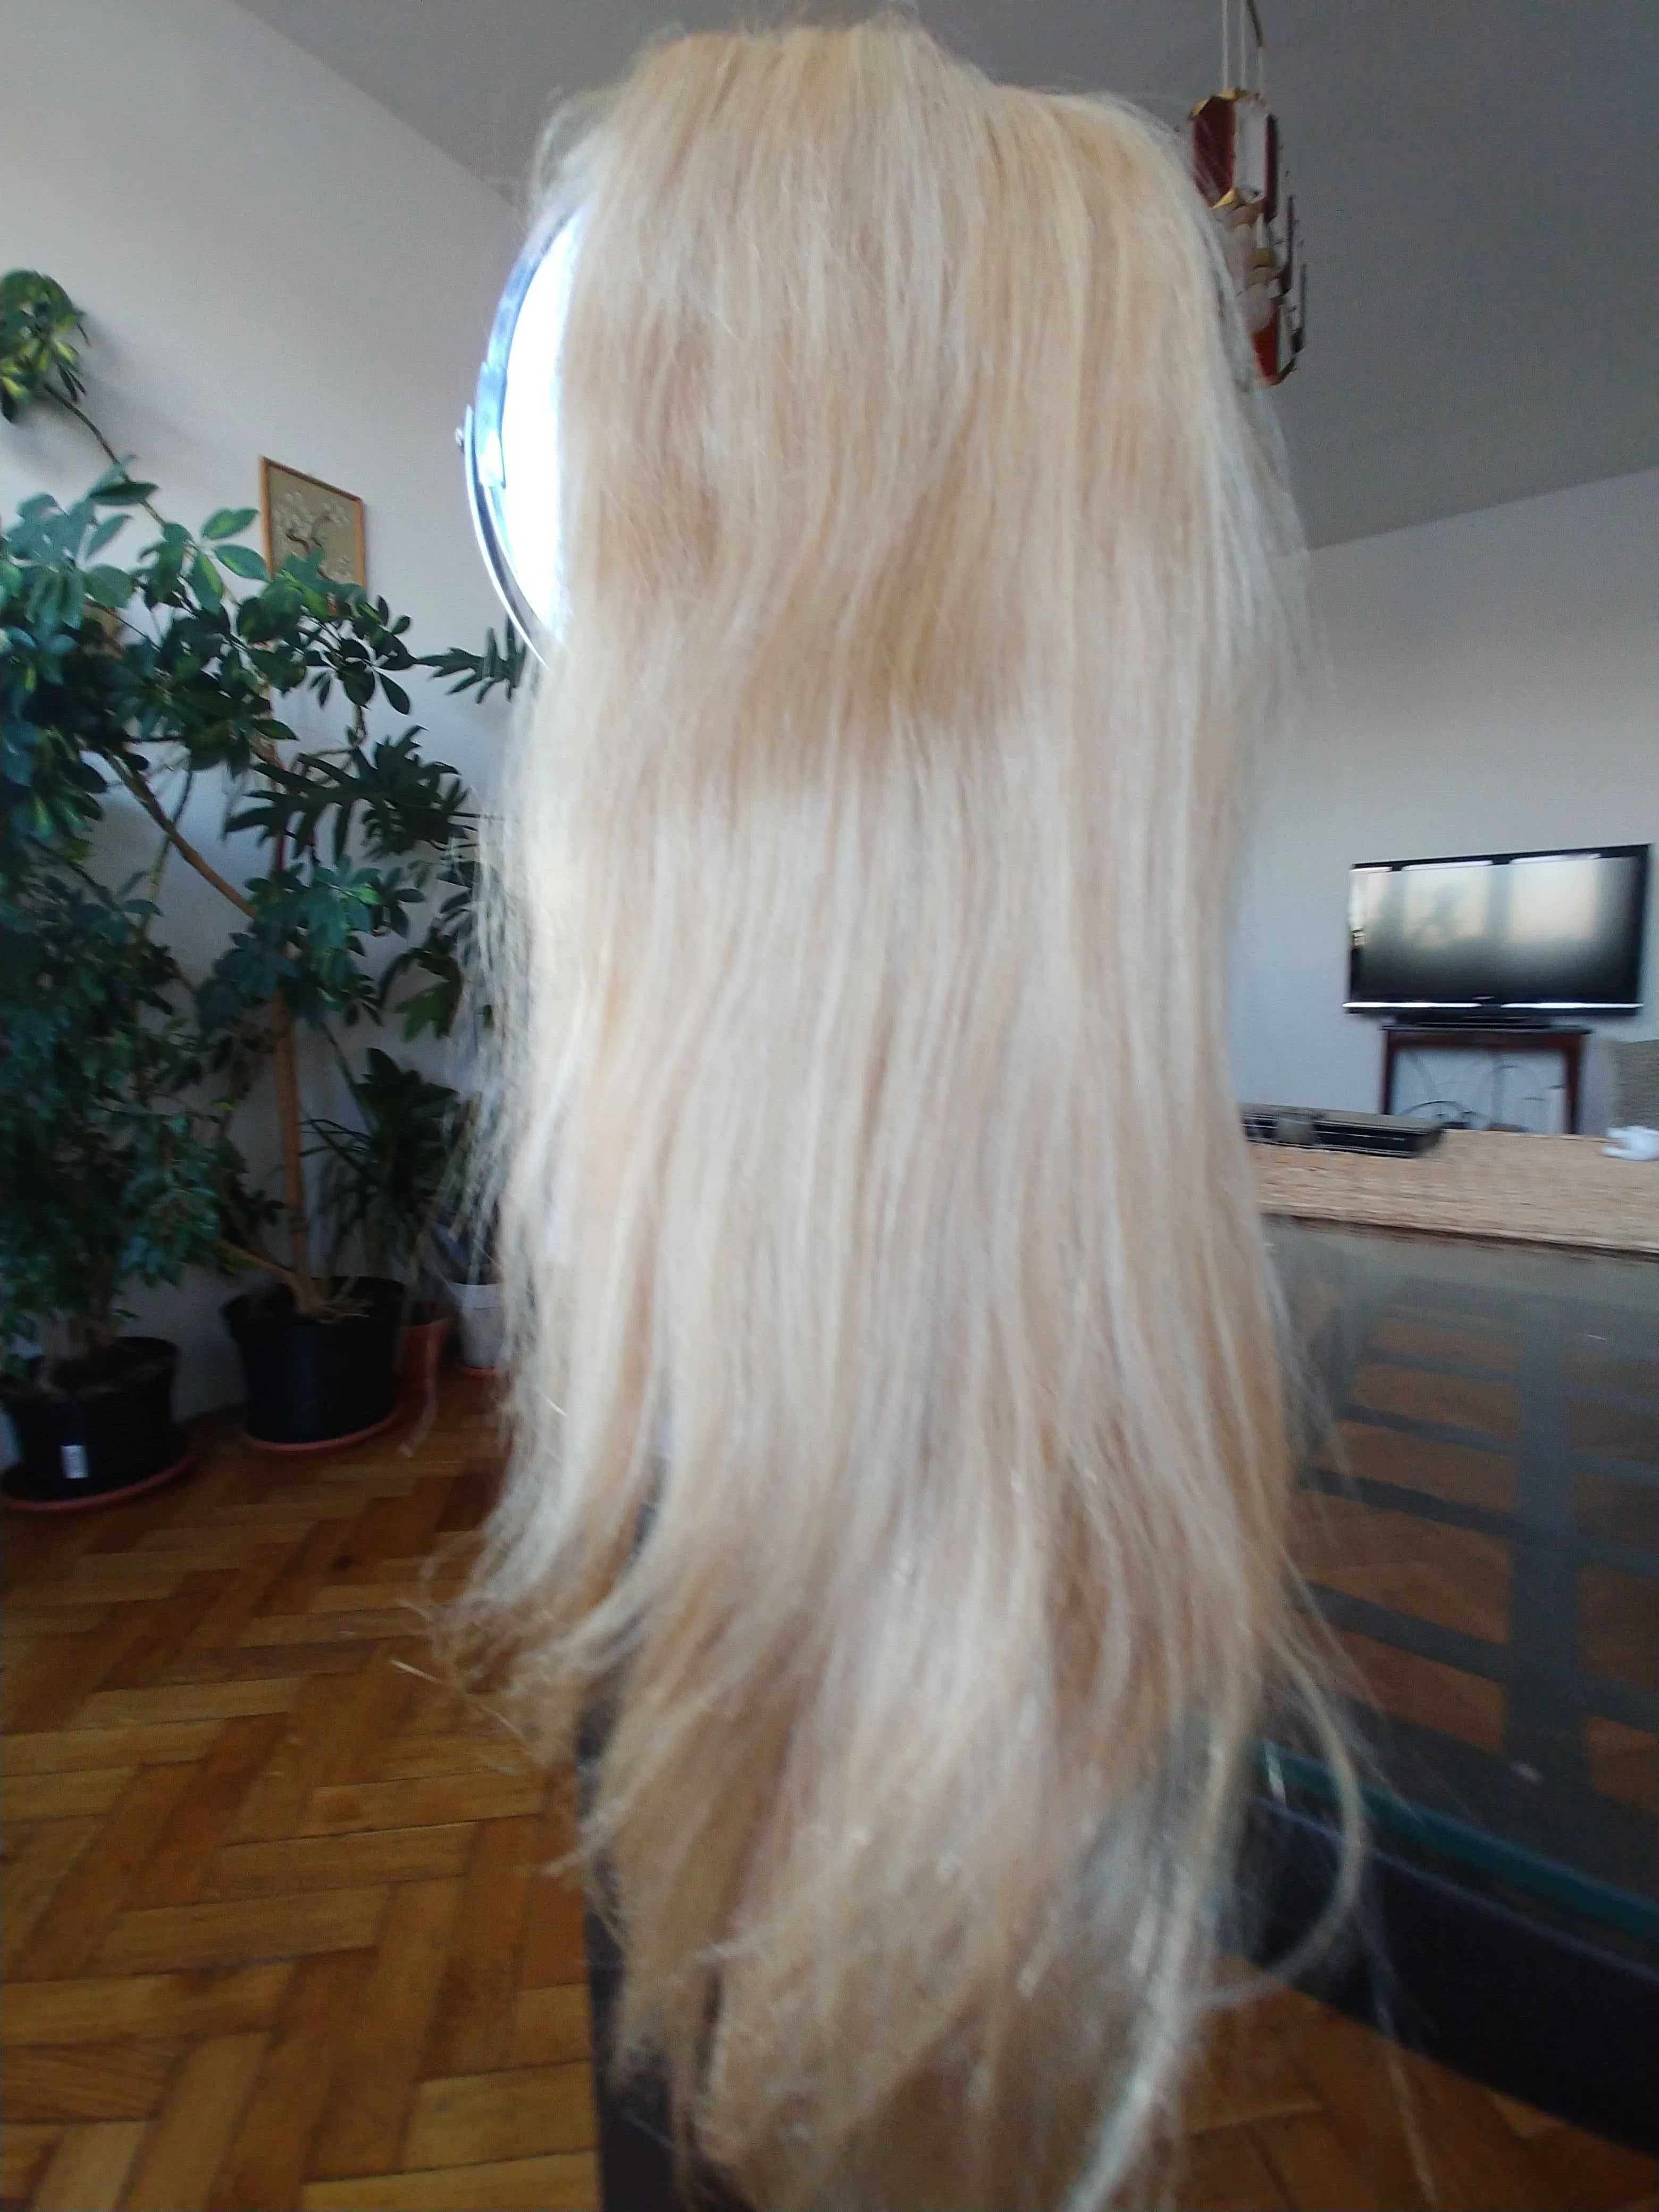 peruka naturalna z włosów ludzkich